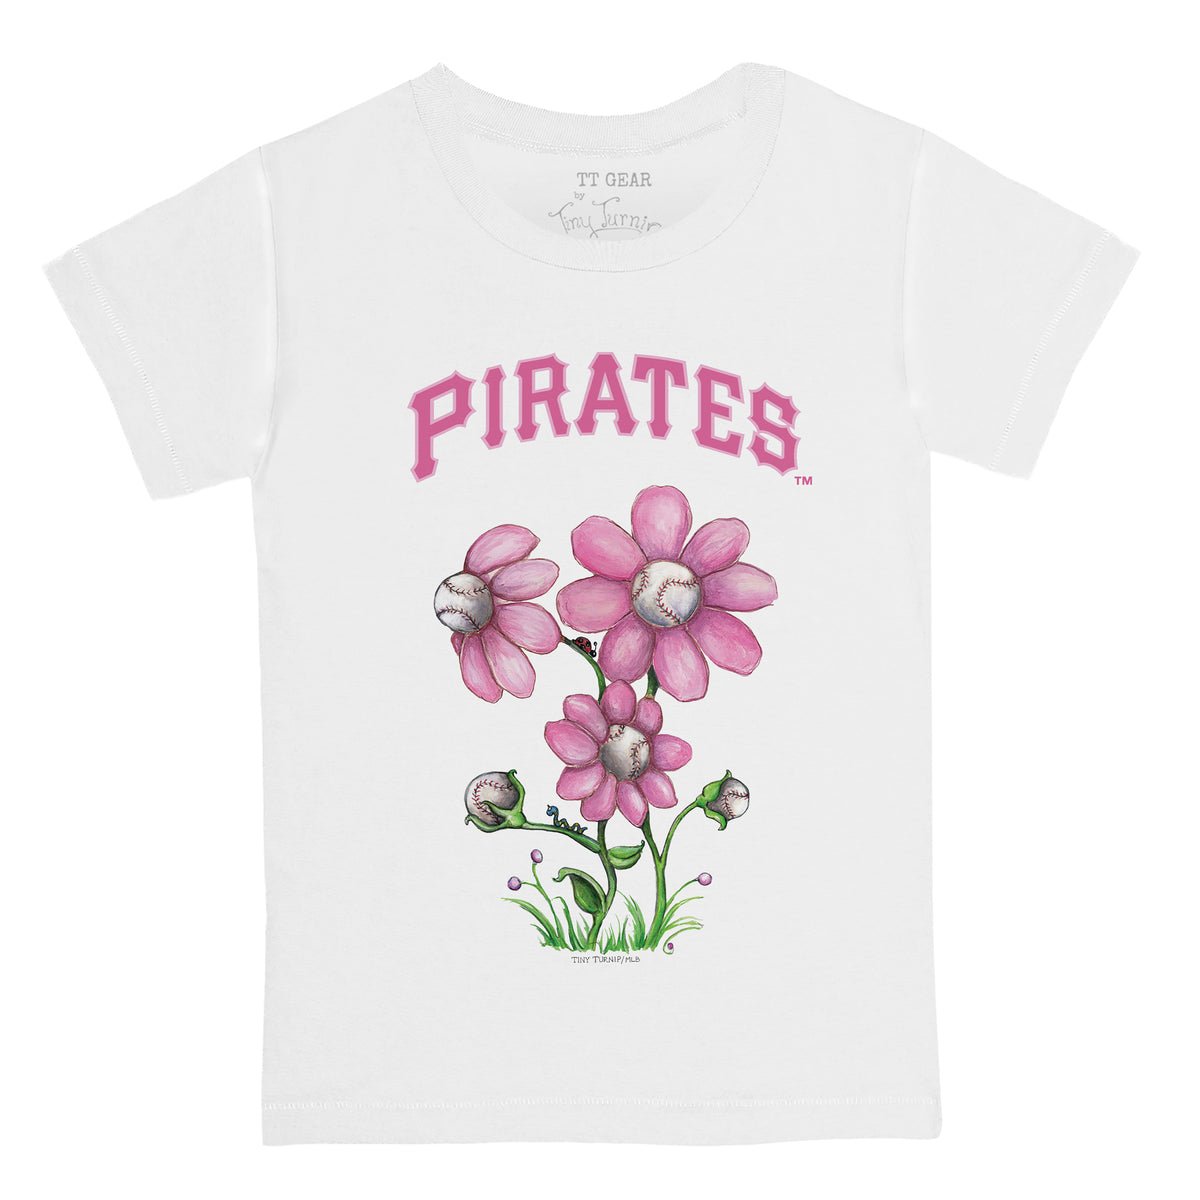 Pittsburgh Pirates Blooming Baseballs Tee Shirt